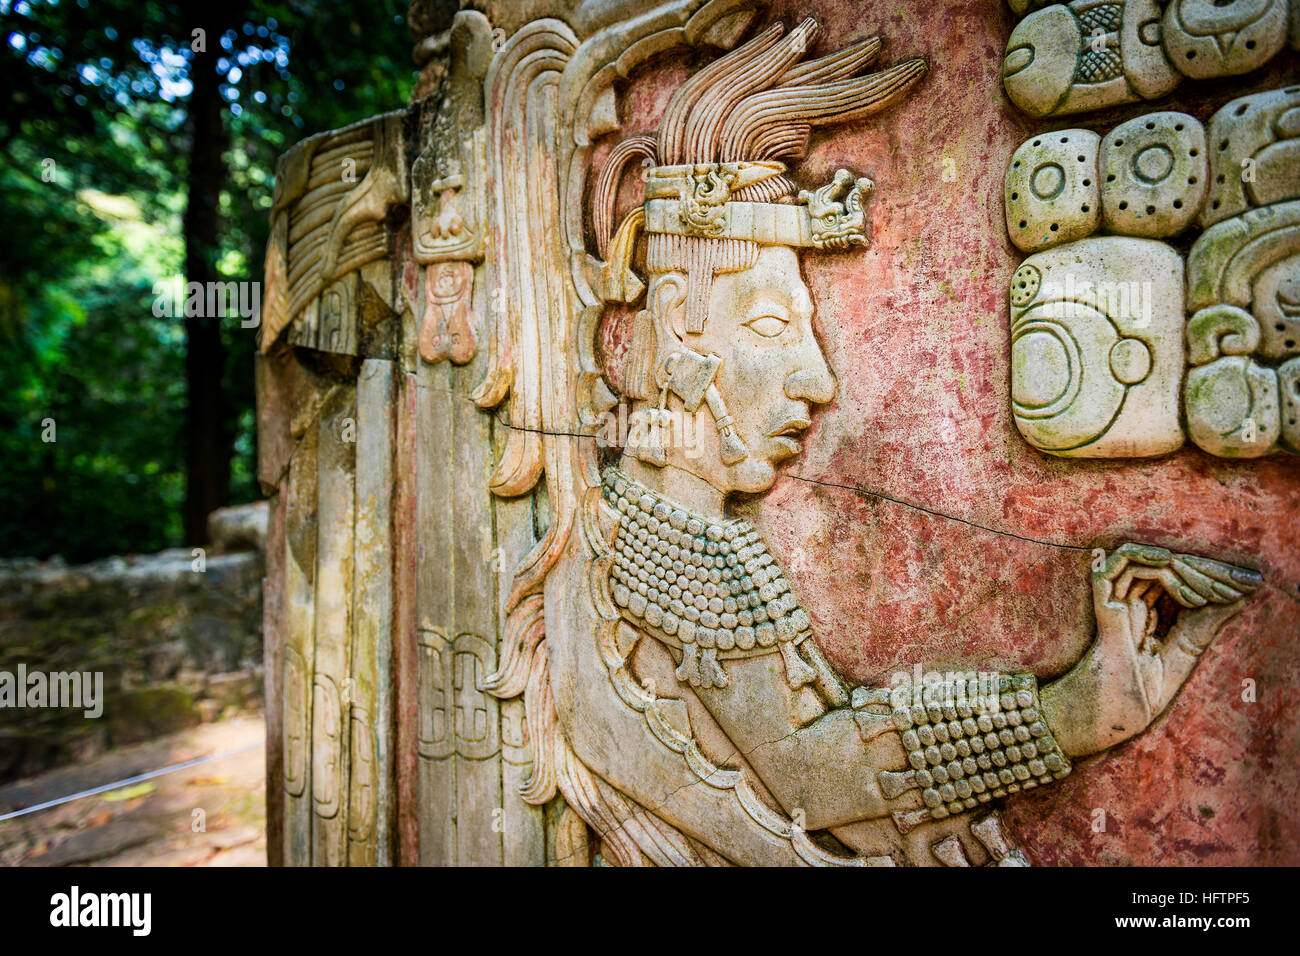 Dettaglio di un bassorilievo carving nell'antica città maya di Palenque, Chiapas, Messico Foto Stock